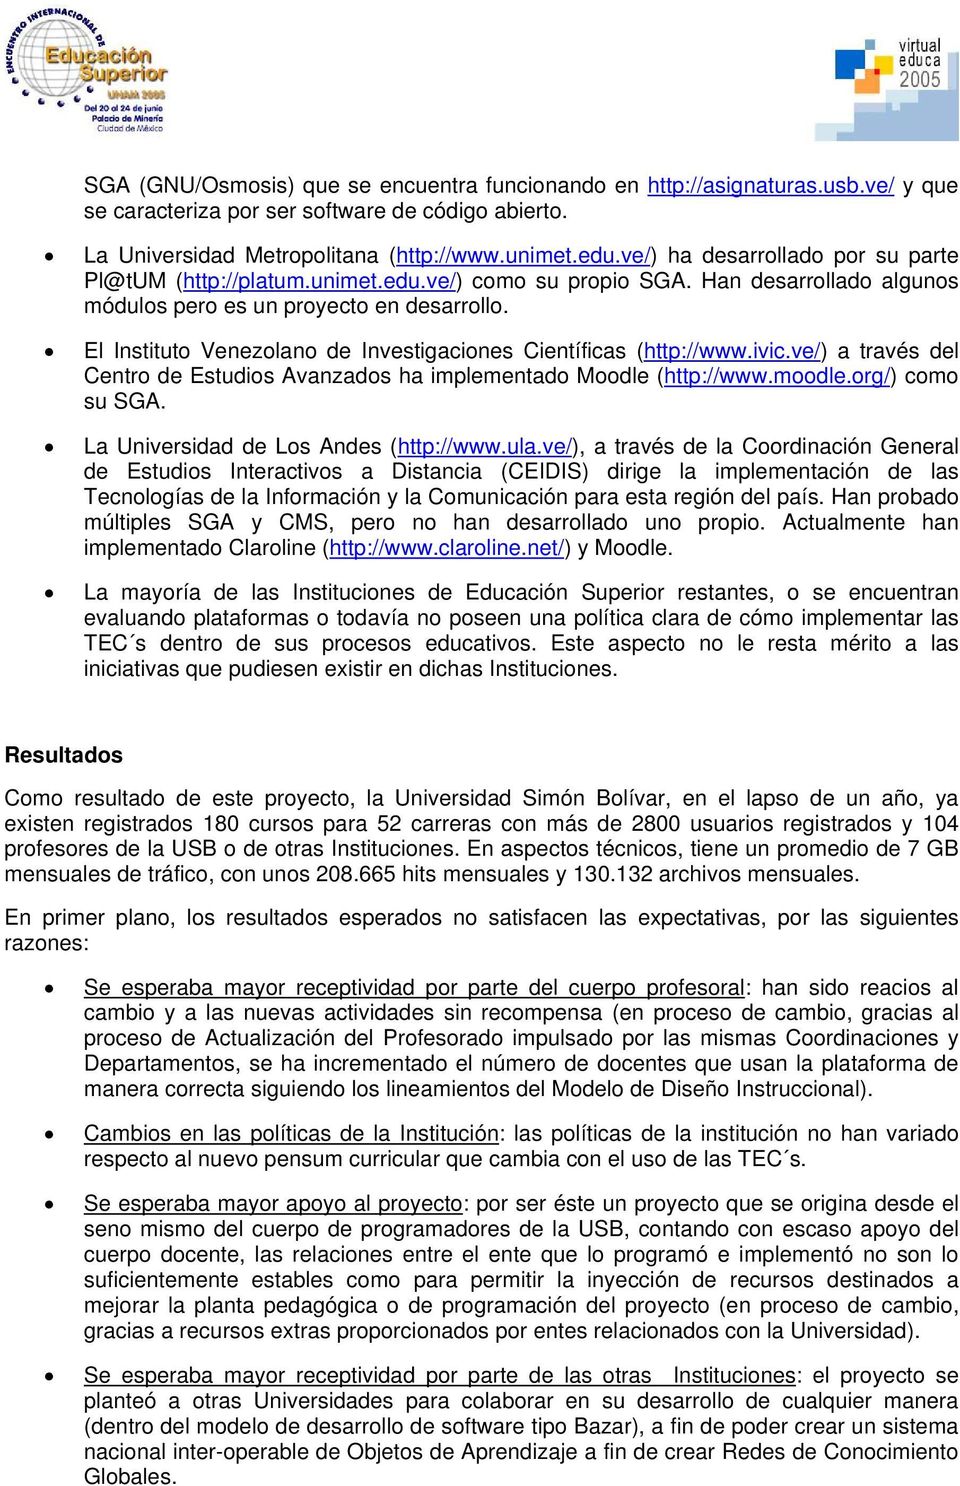 El Instituto Venezolano de Investigaciones Científicas (http://www.ivic.ve/) a través del Centro de Estudios Avanzados ha implementado Moodle (http://www.moodle.org/) como su SGA.